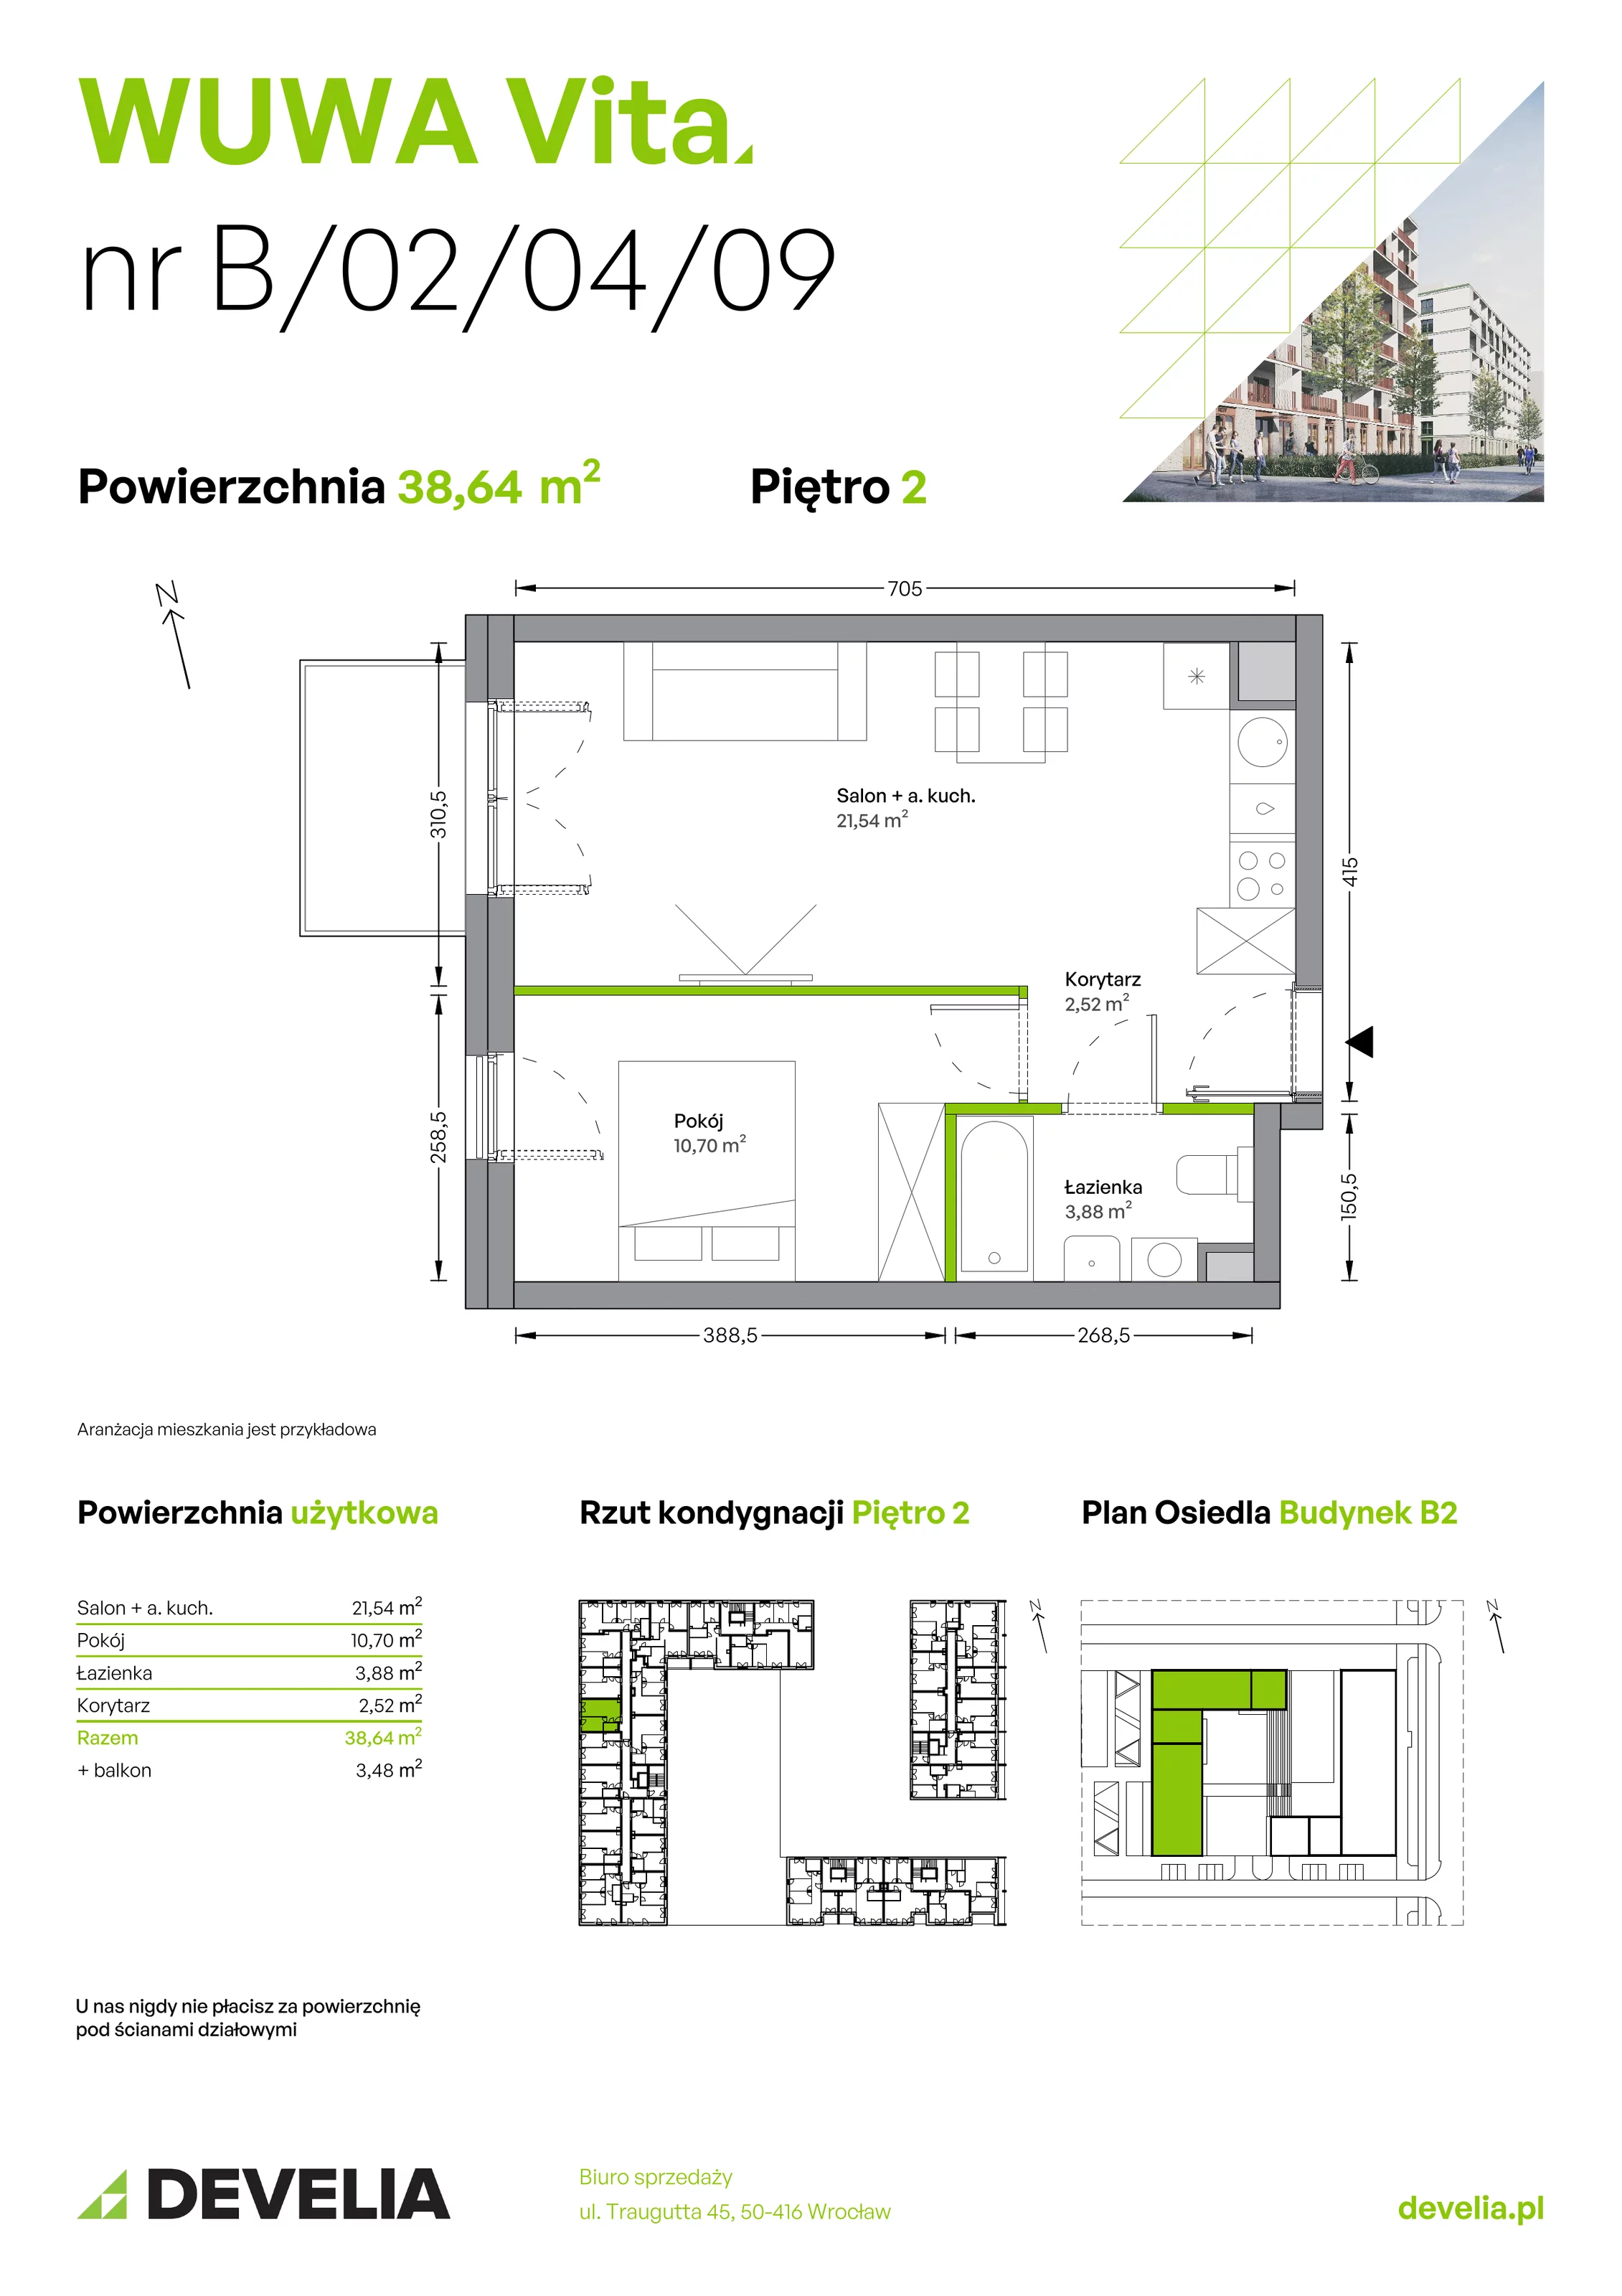 Mieszkanie 38,64 m², piętro 2, oferta nr B.02.04.09, WUWA Vita, Wrocław, Żerniki, Fabryczna, ul. Tadeusza Brzozy